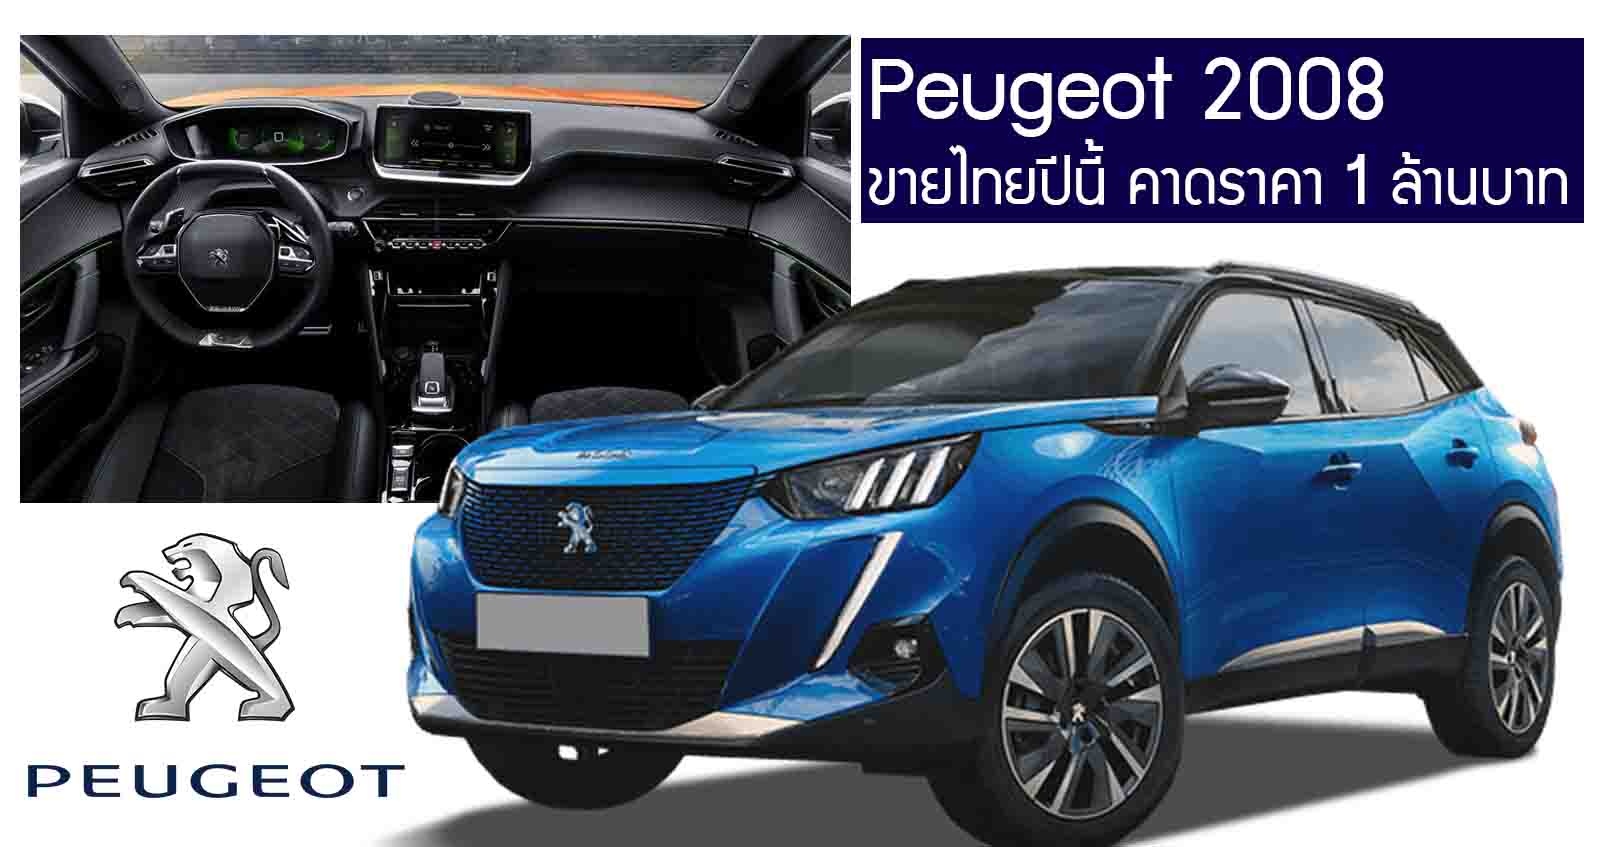 All NEW Peugeot 2008 เบนซิน 1.2T เทอร์โบ ราคา 1 ล้านบาท ขายไทยปีนี้